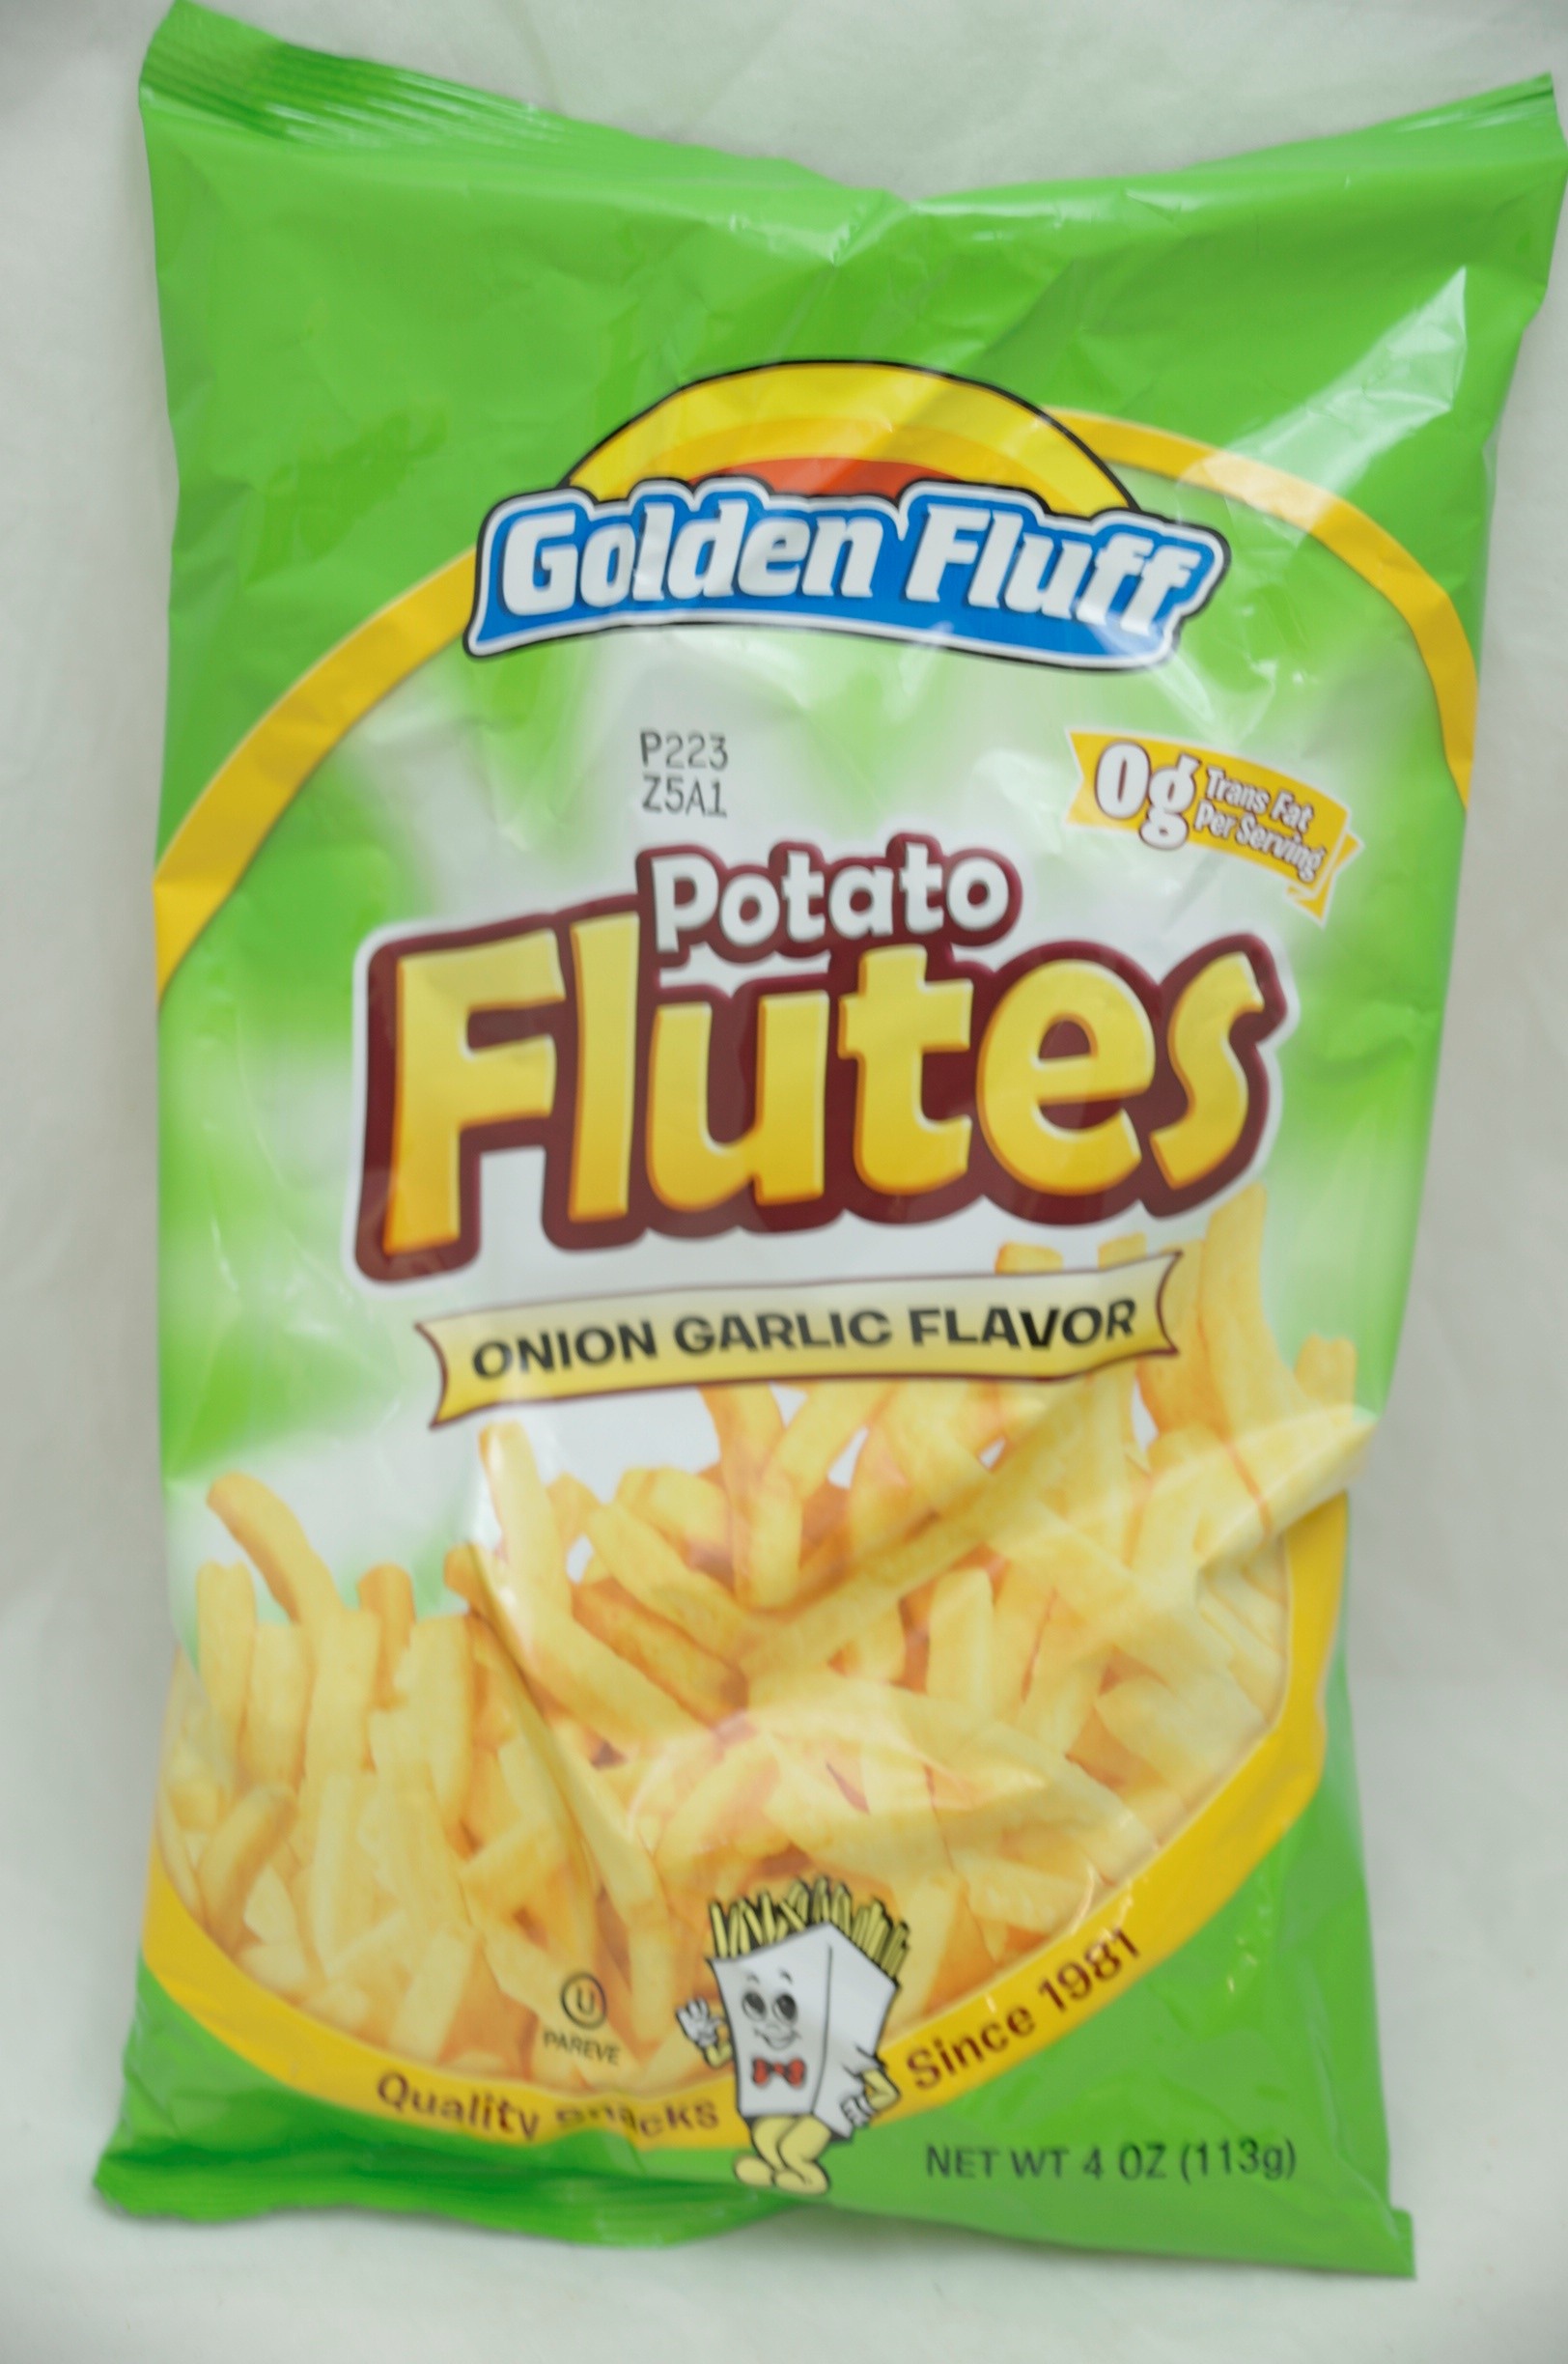 Golden Fluff Potato Stix Classic - 6 Oz - Randalls